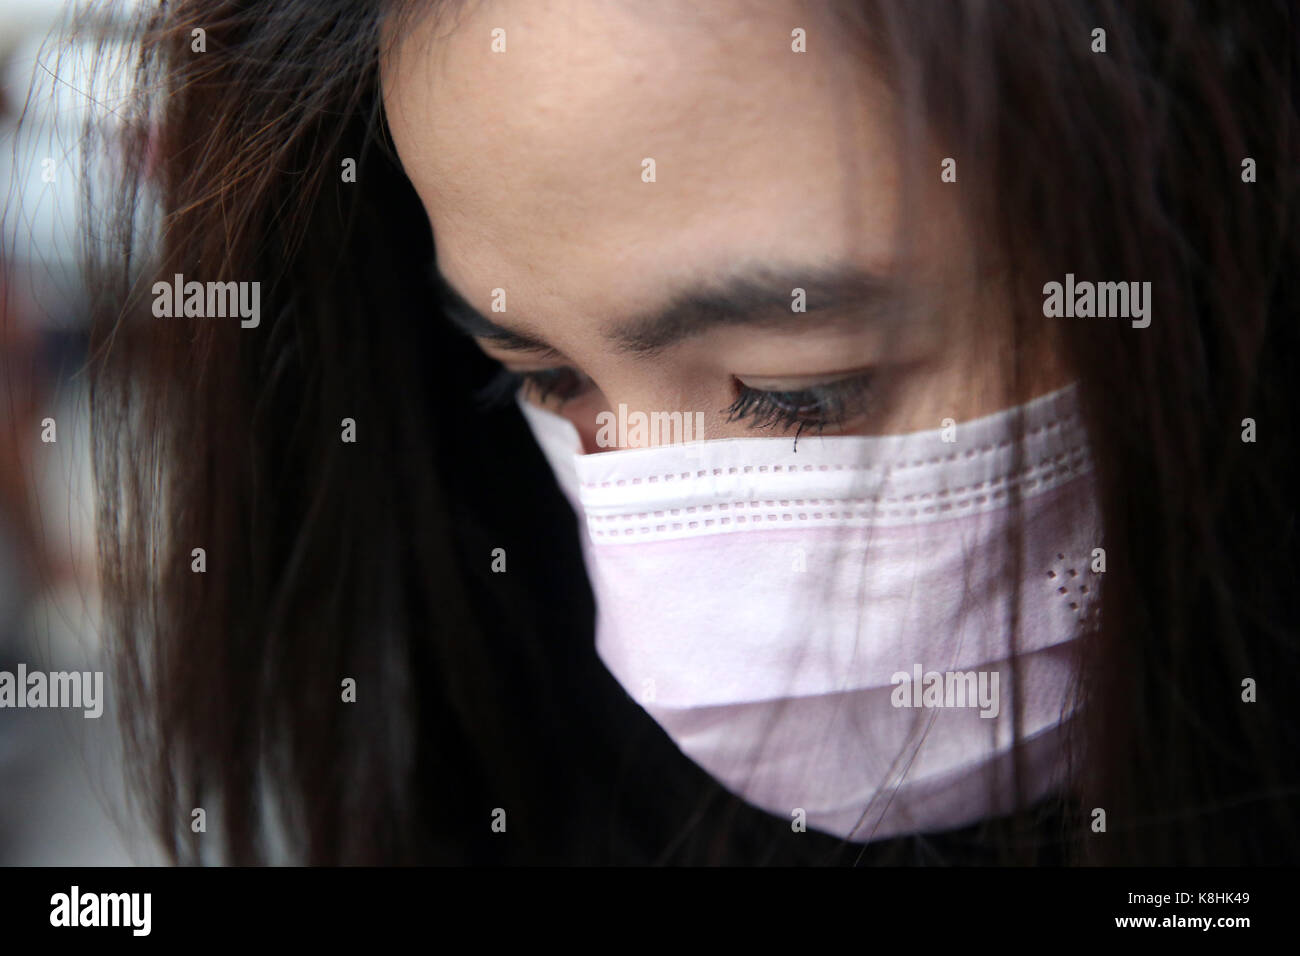 Mujer joven con máscara de protección en la cara. Ciudad ho chi minh. vietnam. Foto de stock